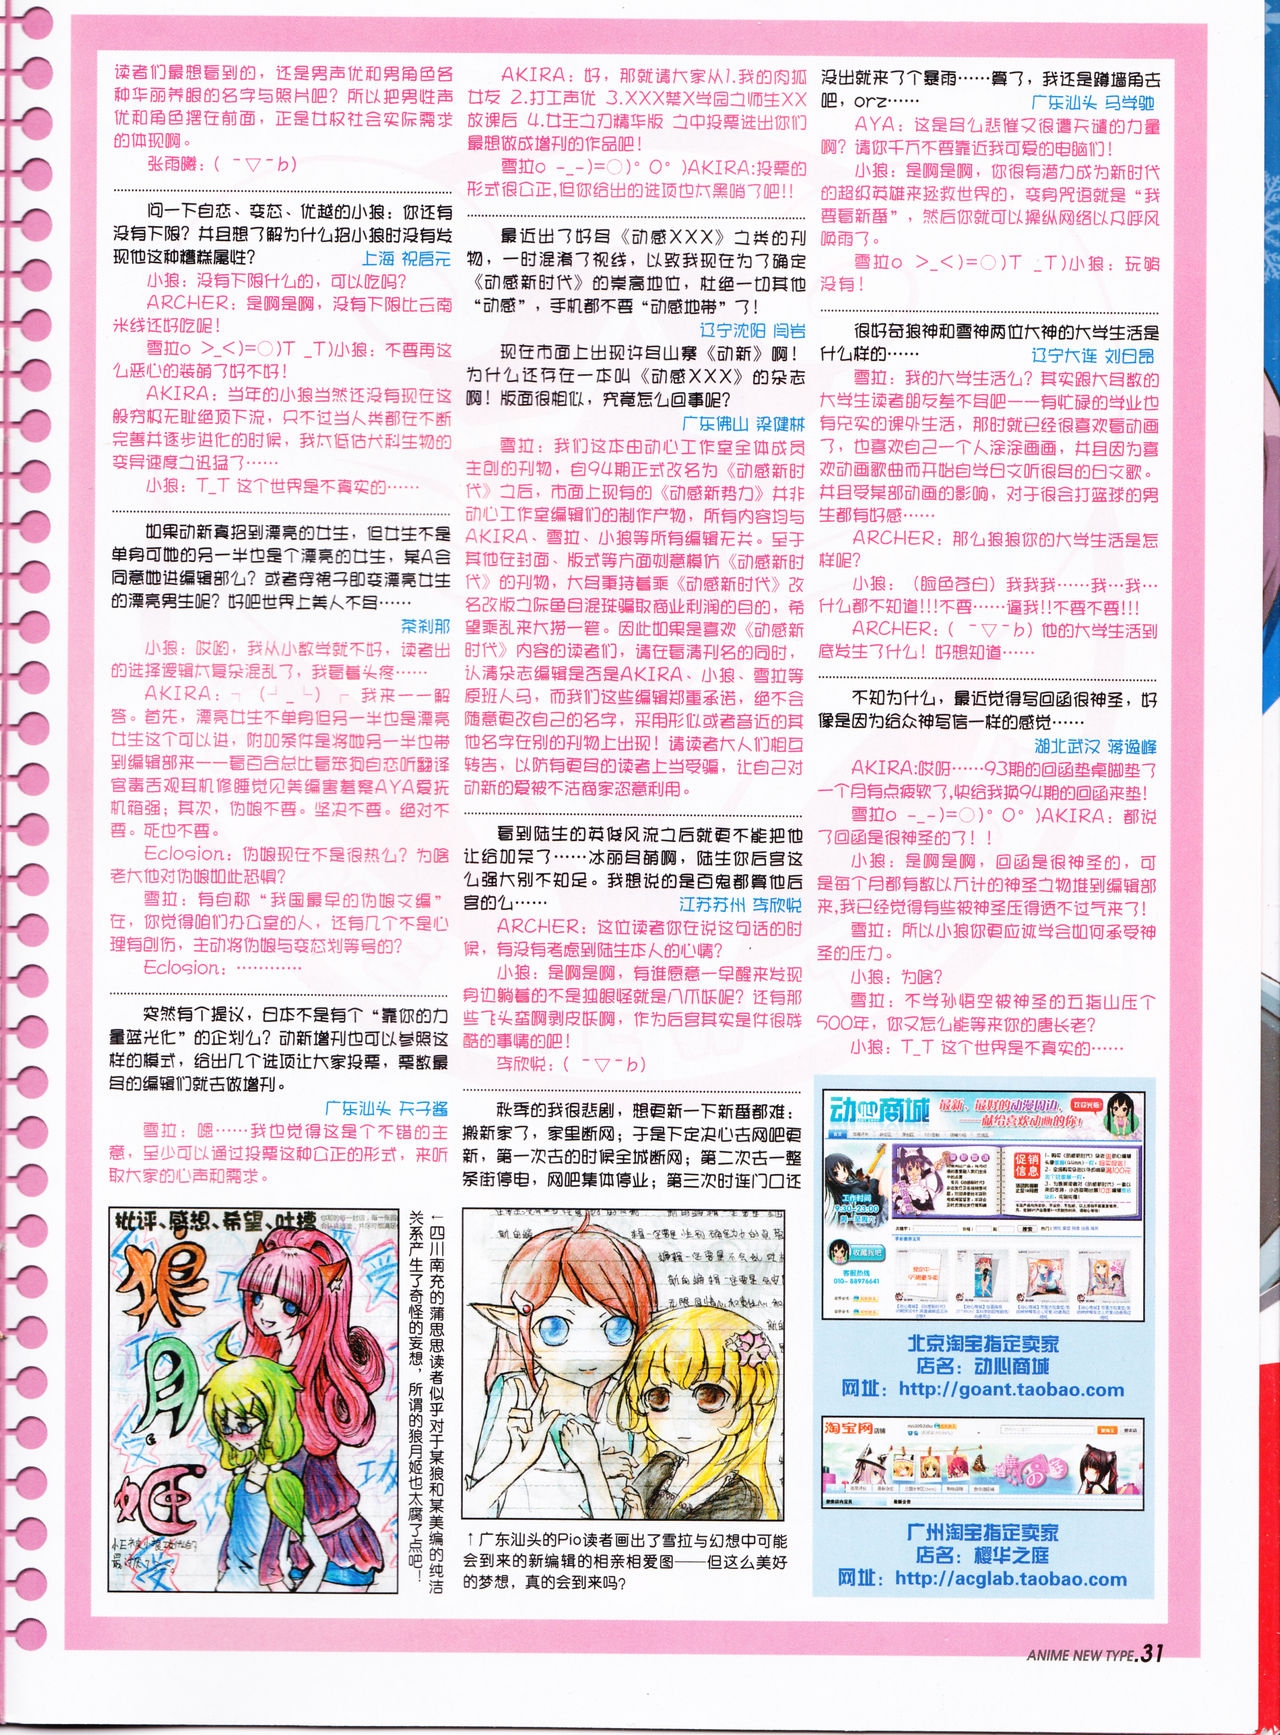 Anime New Type Vol.095 32